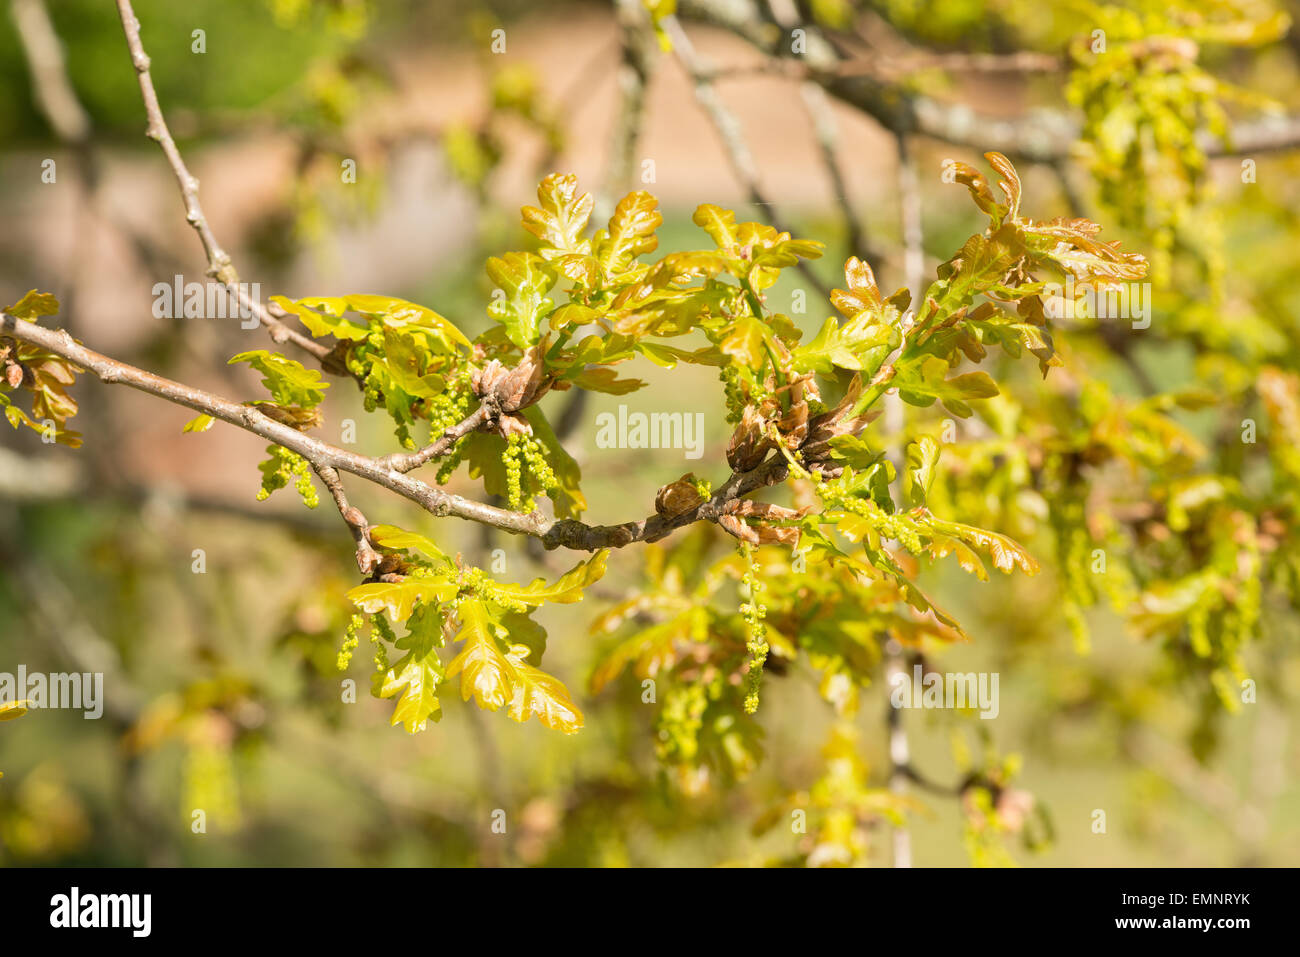 Englische Stieleiche, Quercus Robur und ein blühender Zweig, männlicher Blütenstand Blüten Kätzchen mit der Entwicklung von neuen Blätter Stockfoto